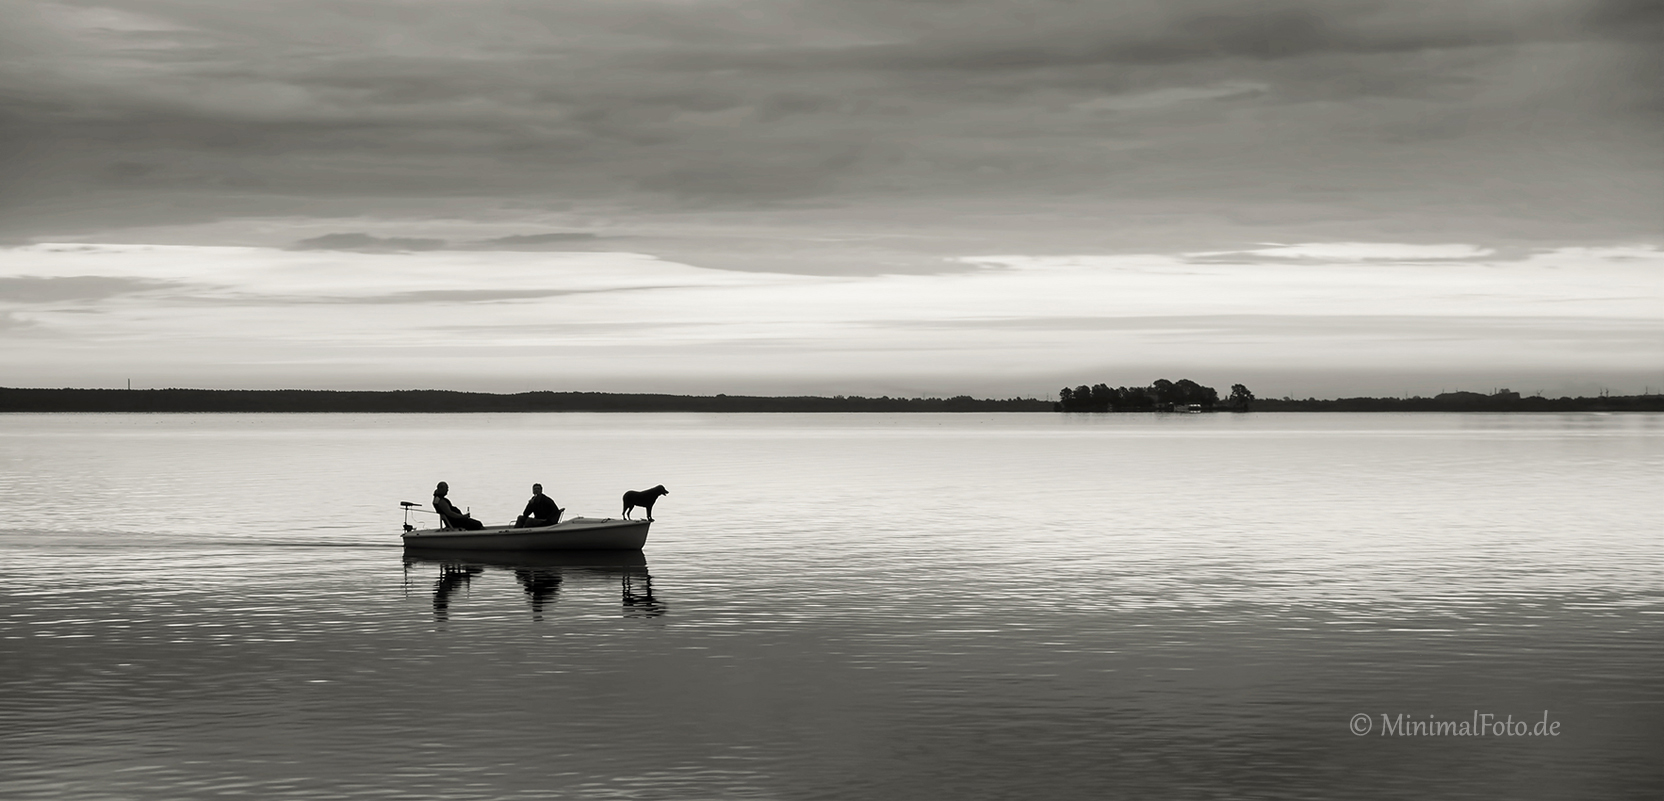 boot-boat-hund-dog-See-Lake-Minimalismus-minimalistisch-minimalistic-people-Menschen-Silhouette-black-white-schwarz-weiss-C_SAM_0943b-sw